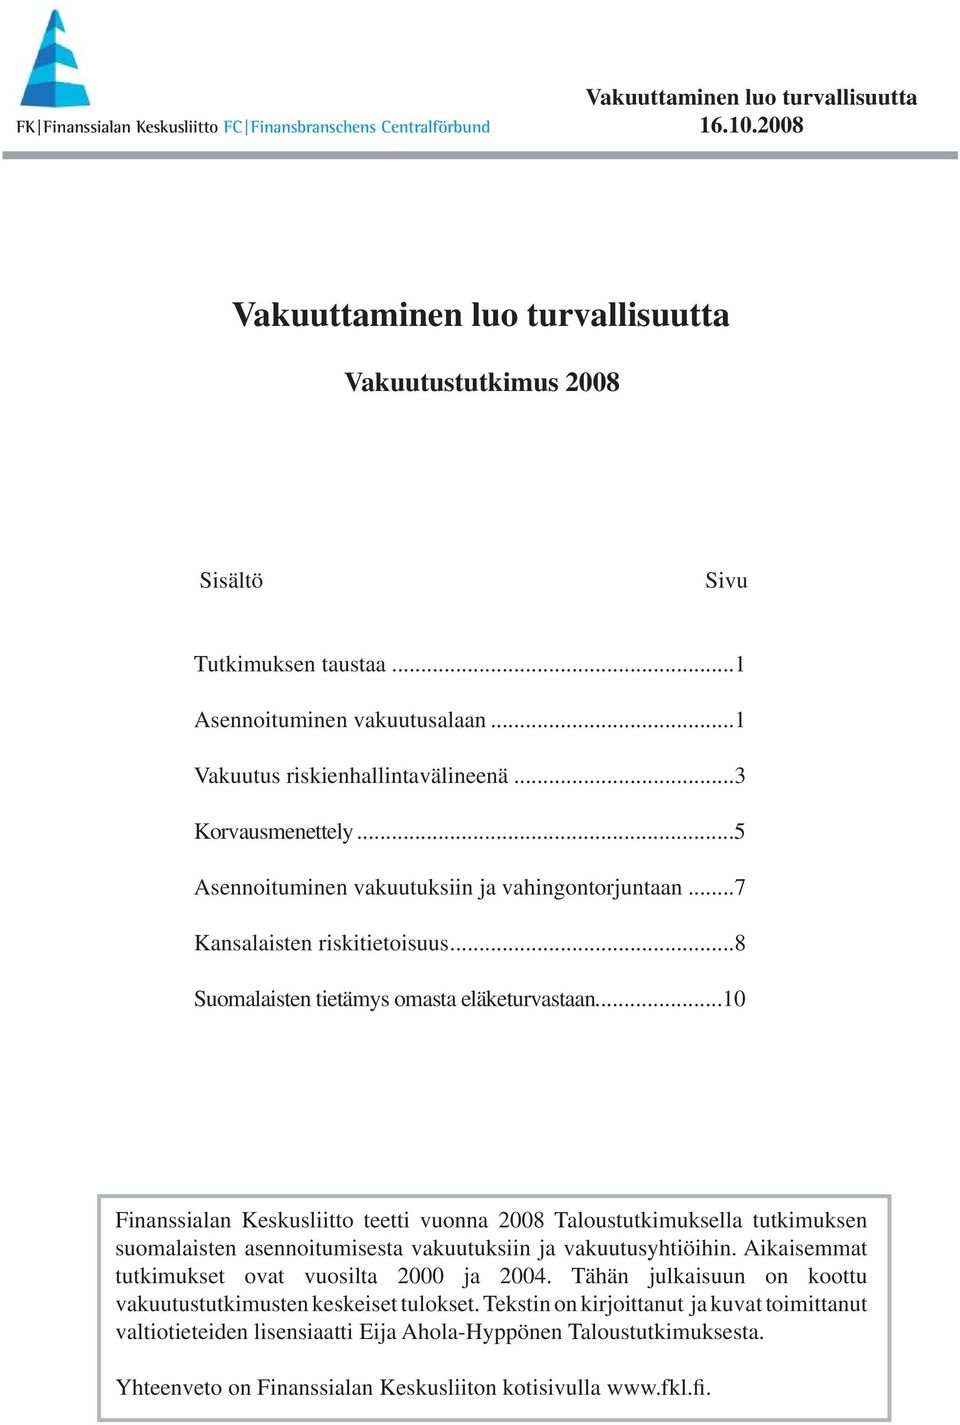 ..10 teetti vuonna 2008 Taloustutkimuksella tutkimuksen suomalaisten asennoitumisesta vakuutuksiin ja vakuutusyhtiöihin. Aikaisemmat tutkimukset ovat vuosilta 2000 ja 2004.